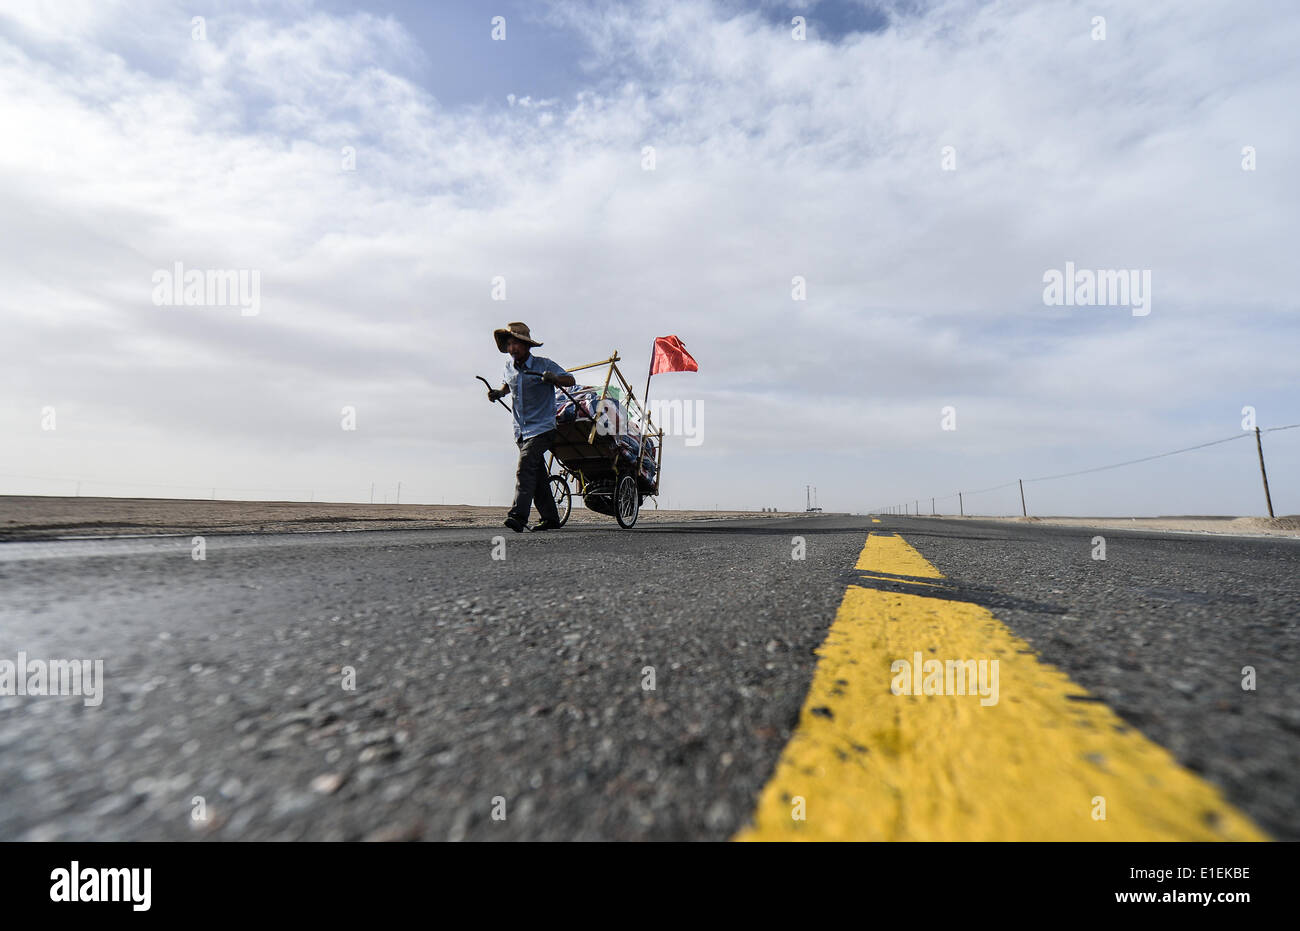 (140602) -- GOLMUD, Giugno 2, 2014 (Xinhua) -- Li Zongtao passeggiate sulla Qinghai-Tibet Highway, a nord-ovest della Cina di Provincia di Qinghai, 30 maggio 2014. Li Zongtao, 47, era una volta un camionista in esecuzione sull'autostrada Sichuan-Tibet. Egli ha iniziato il tour escursioni di viaggio in Cina nel marzo 2009, partendo dal sud-ovest della Cina di Chengdu. Durante il tour, ha fatto una vita da bottiglie di vendita ha colleted lungo la strada. Egli ha camminato con il suo camion in 26 province finora, trekking oltre 20.000 chilometri. (Xinhua/Wu Gang) (mp) Foto Stock